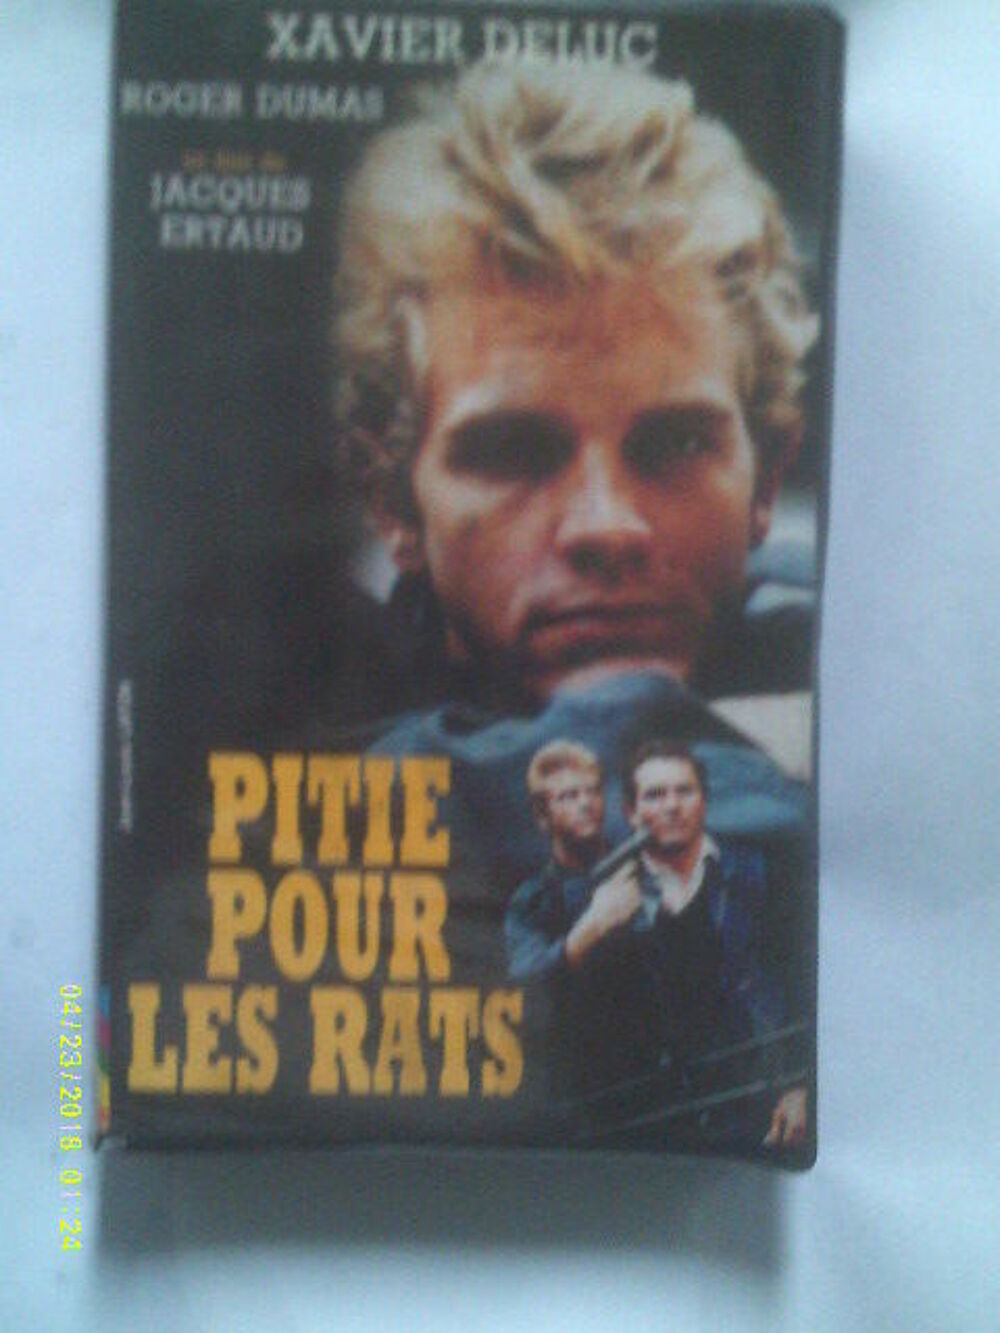 PITIE POUR LES RATS avec Xavier Deluc ( serie noire ) DVD et blu-ray